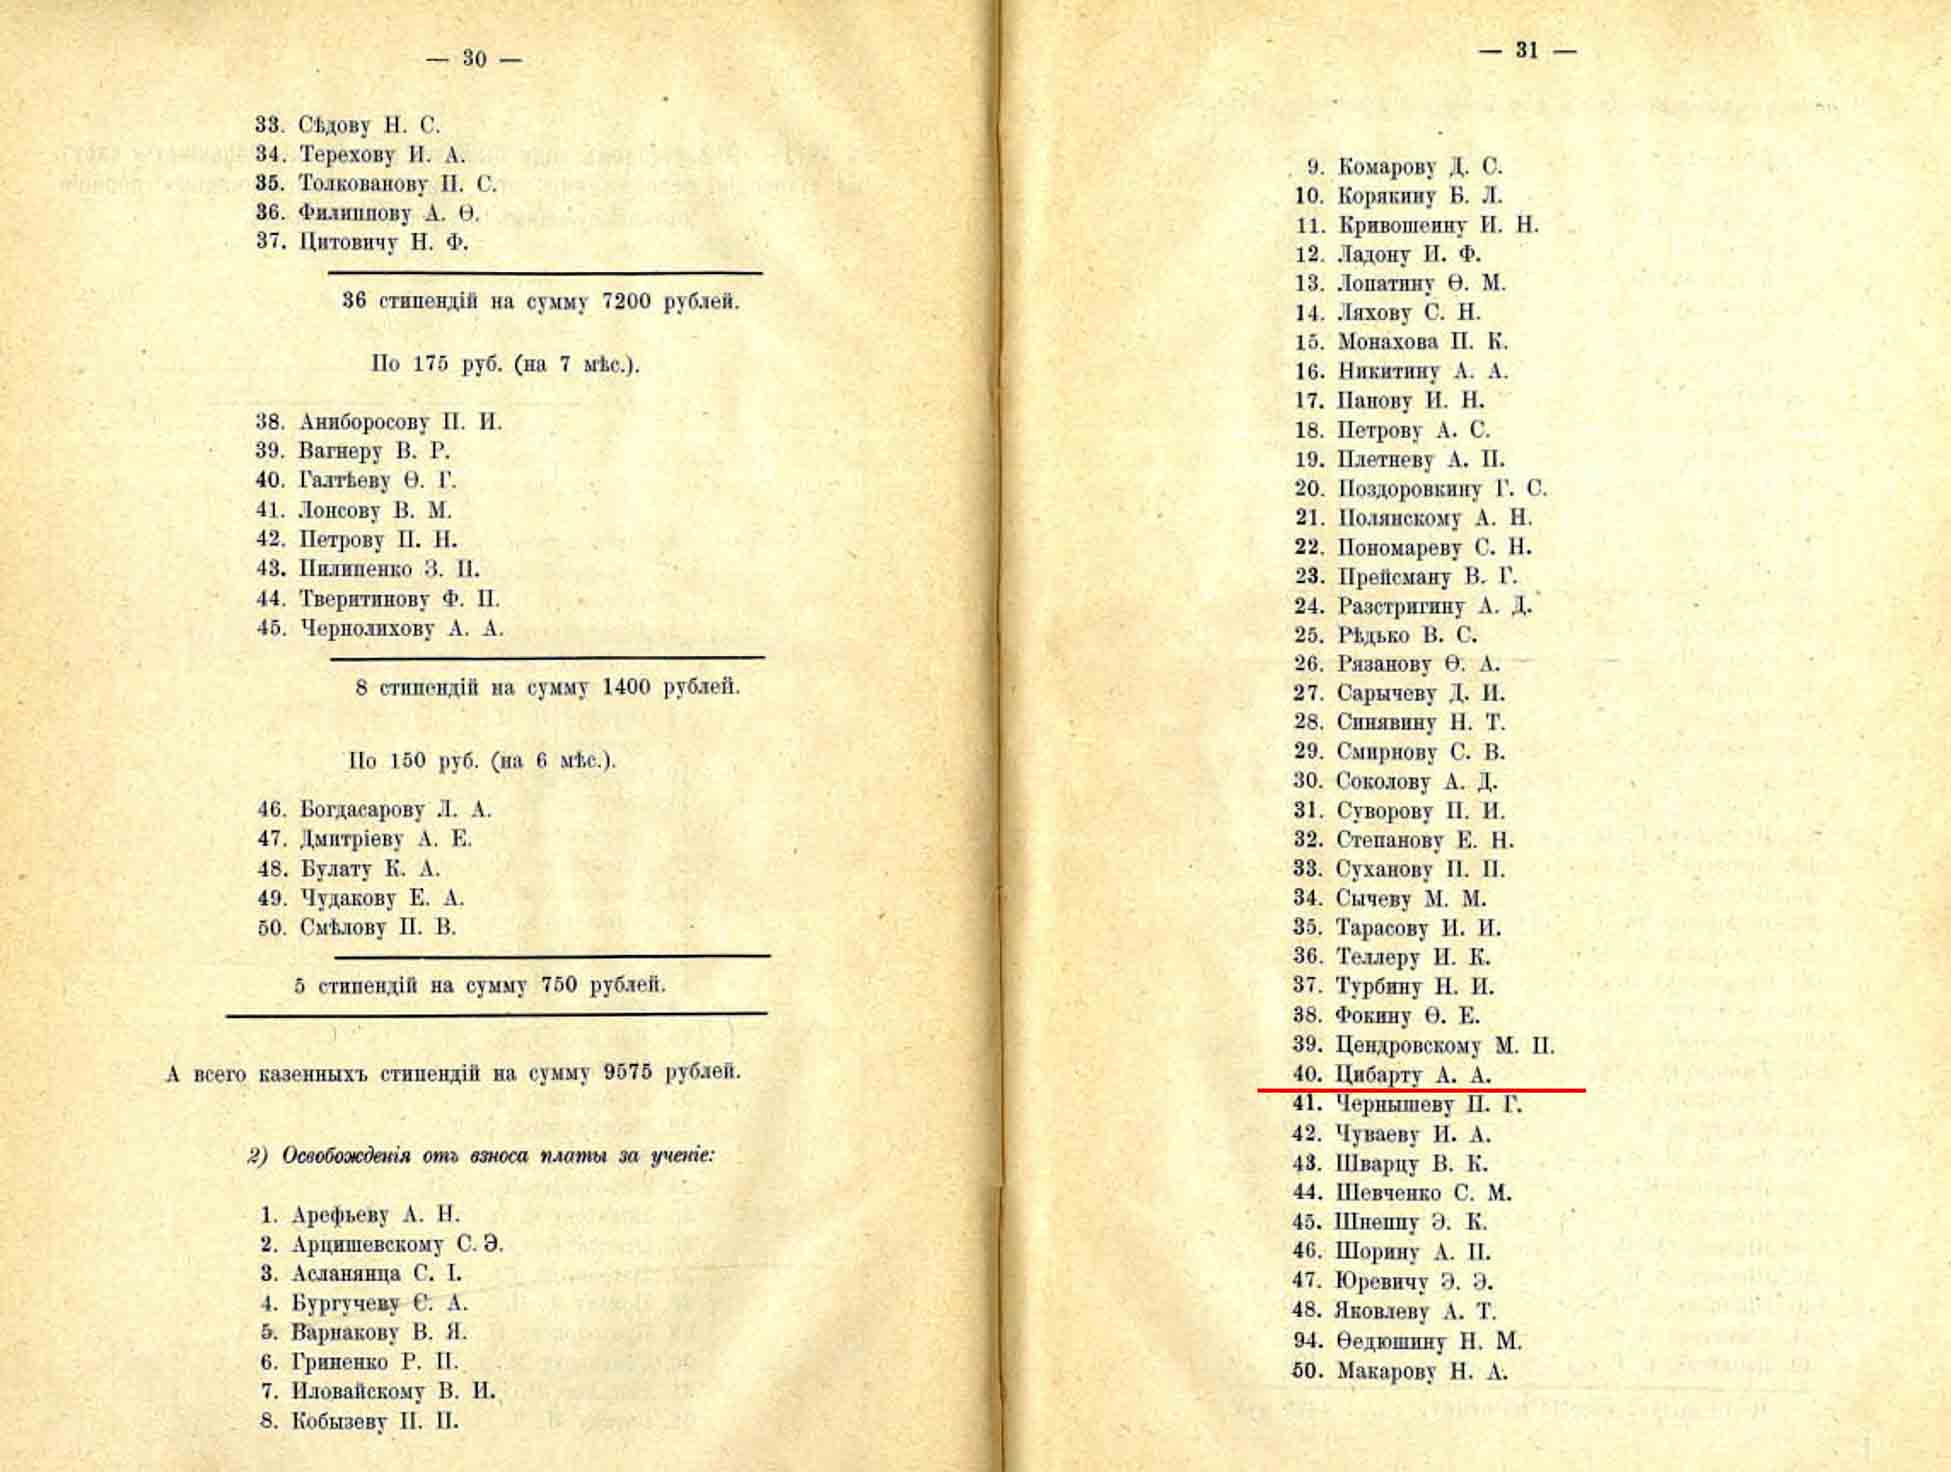 Краткий отчет ИМТУ 1911